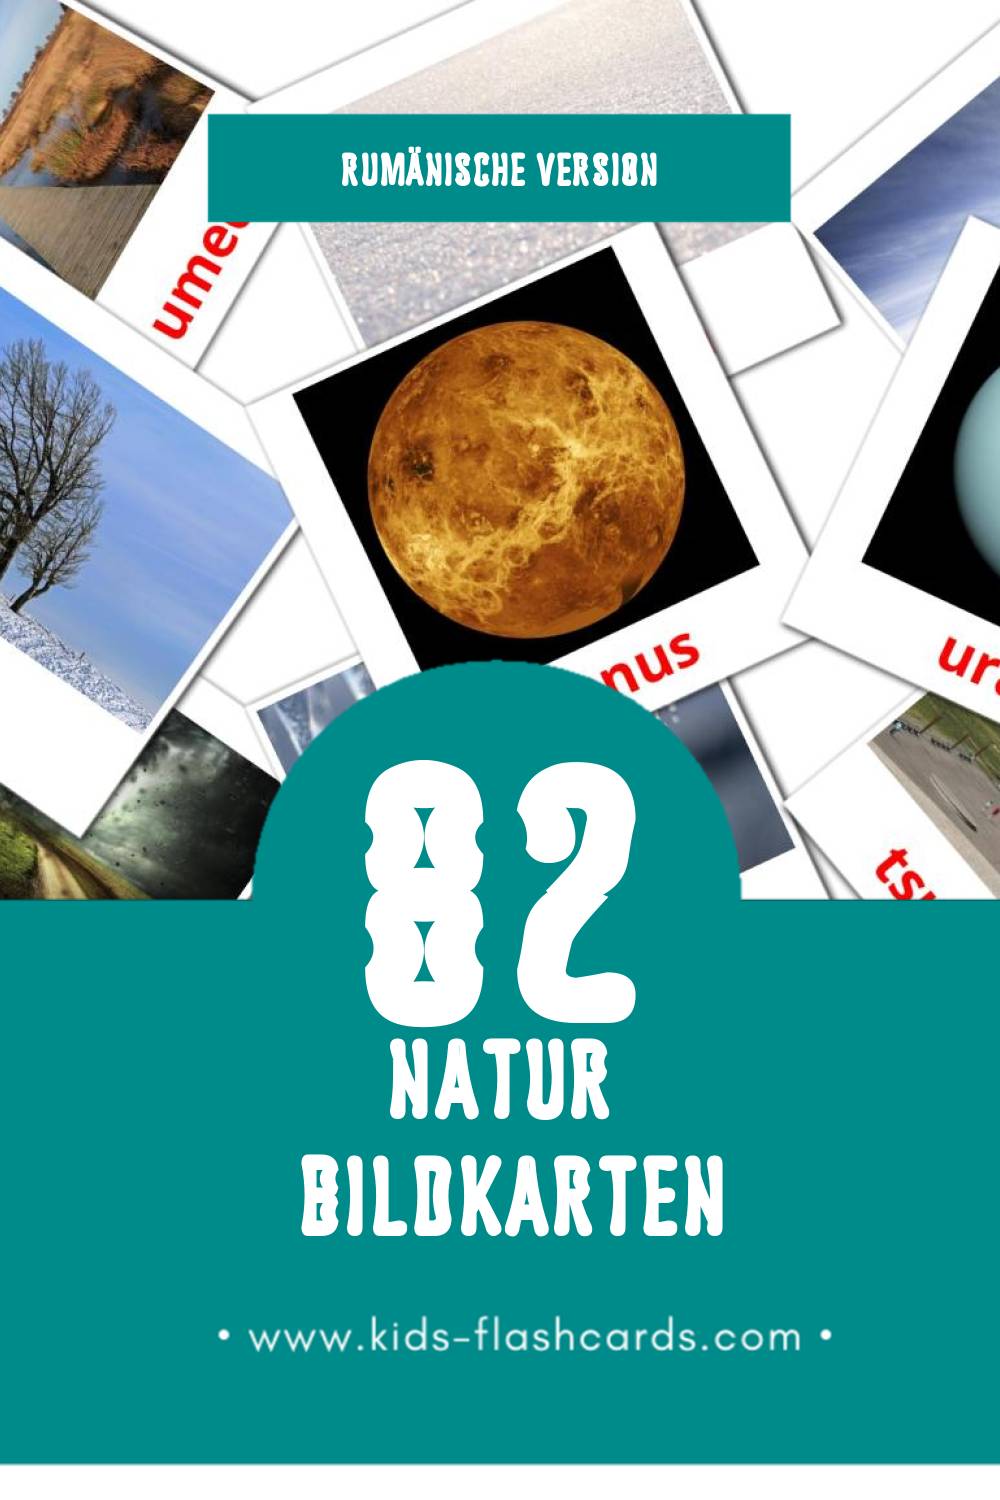 Visual Natura Flashcards für Kleinkinder (82 Karten in Rumänisch)